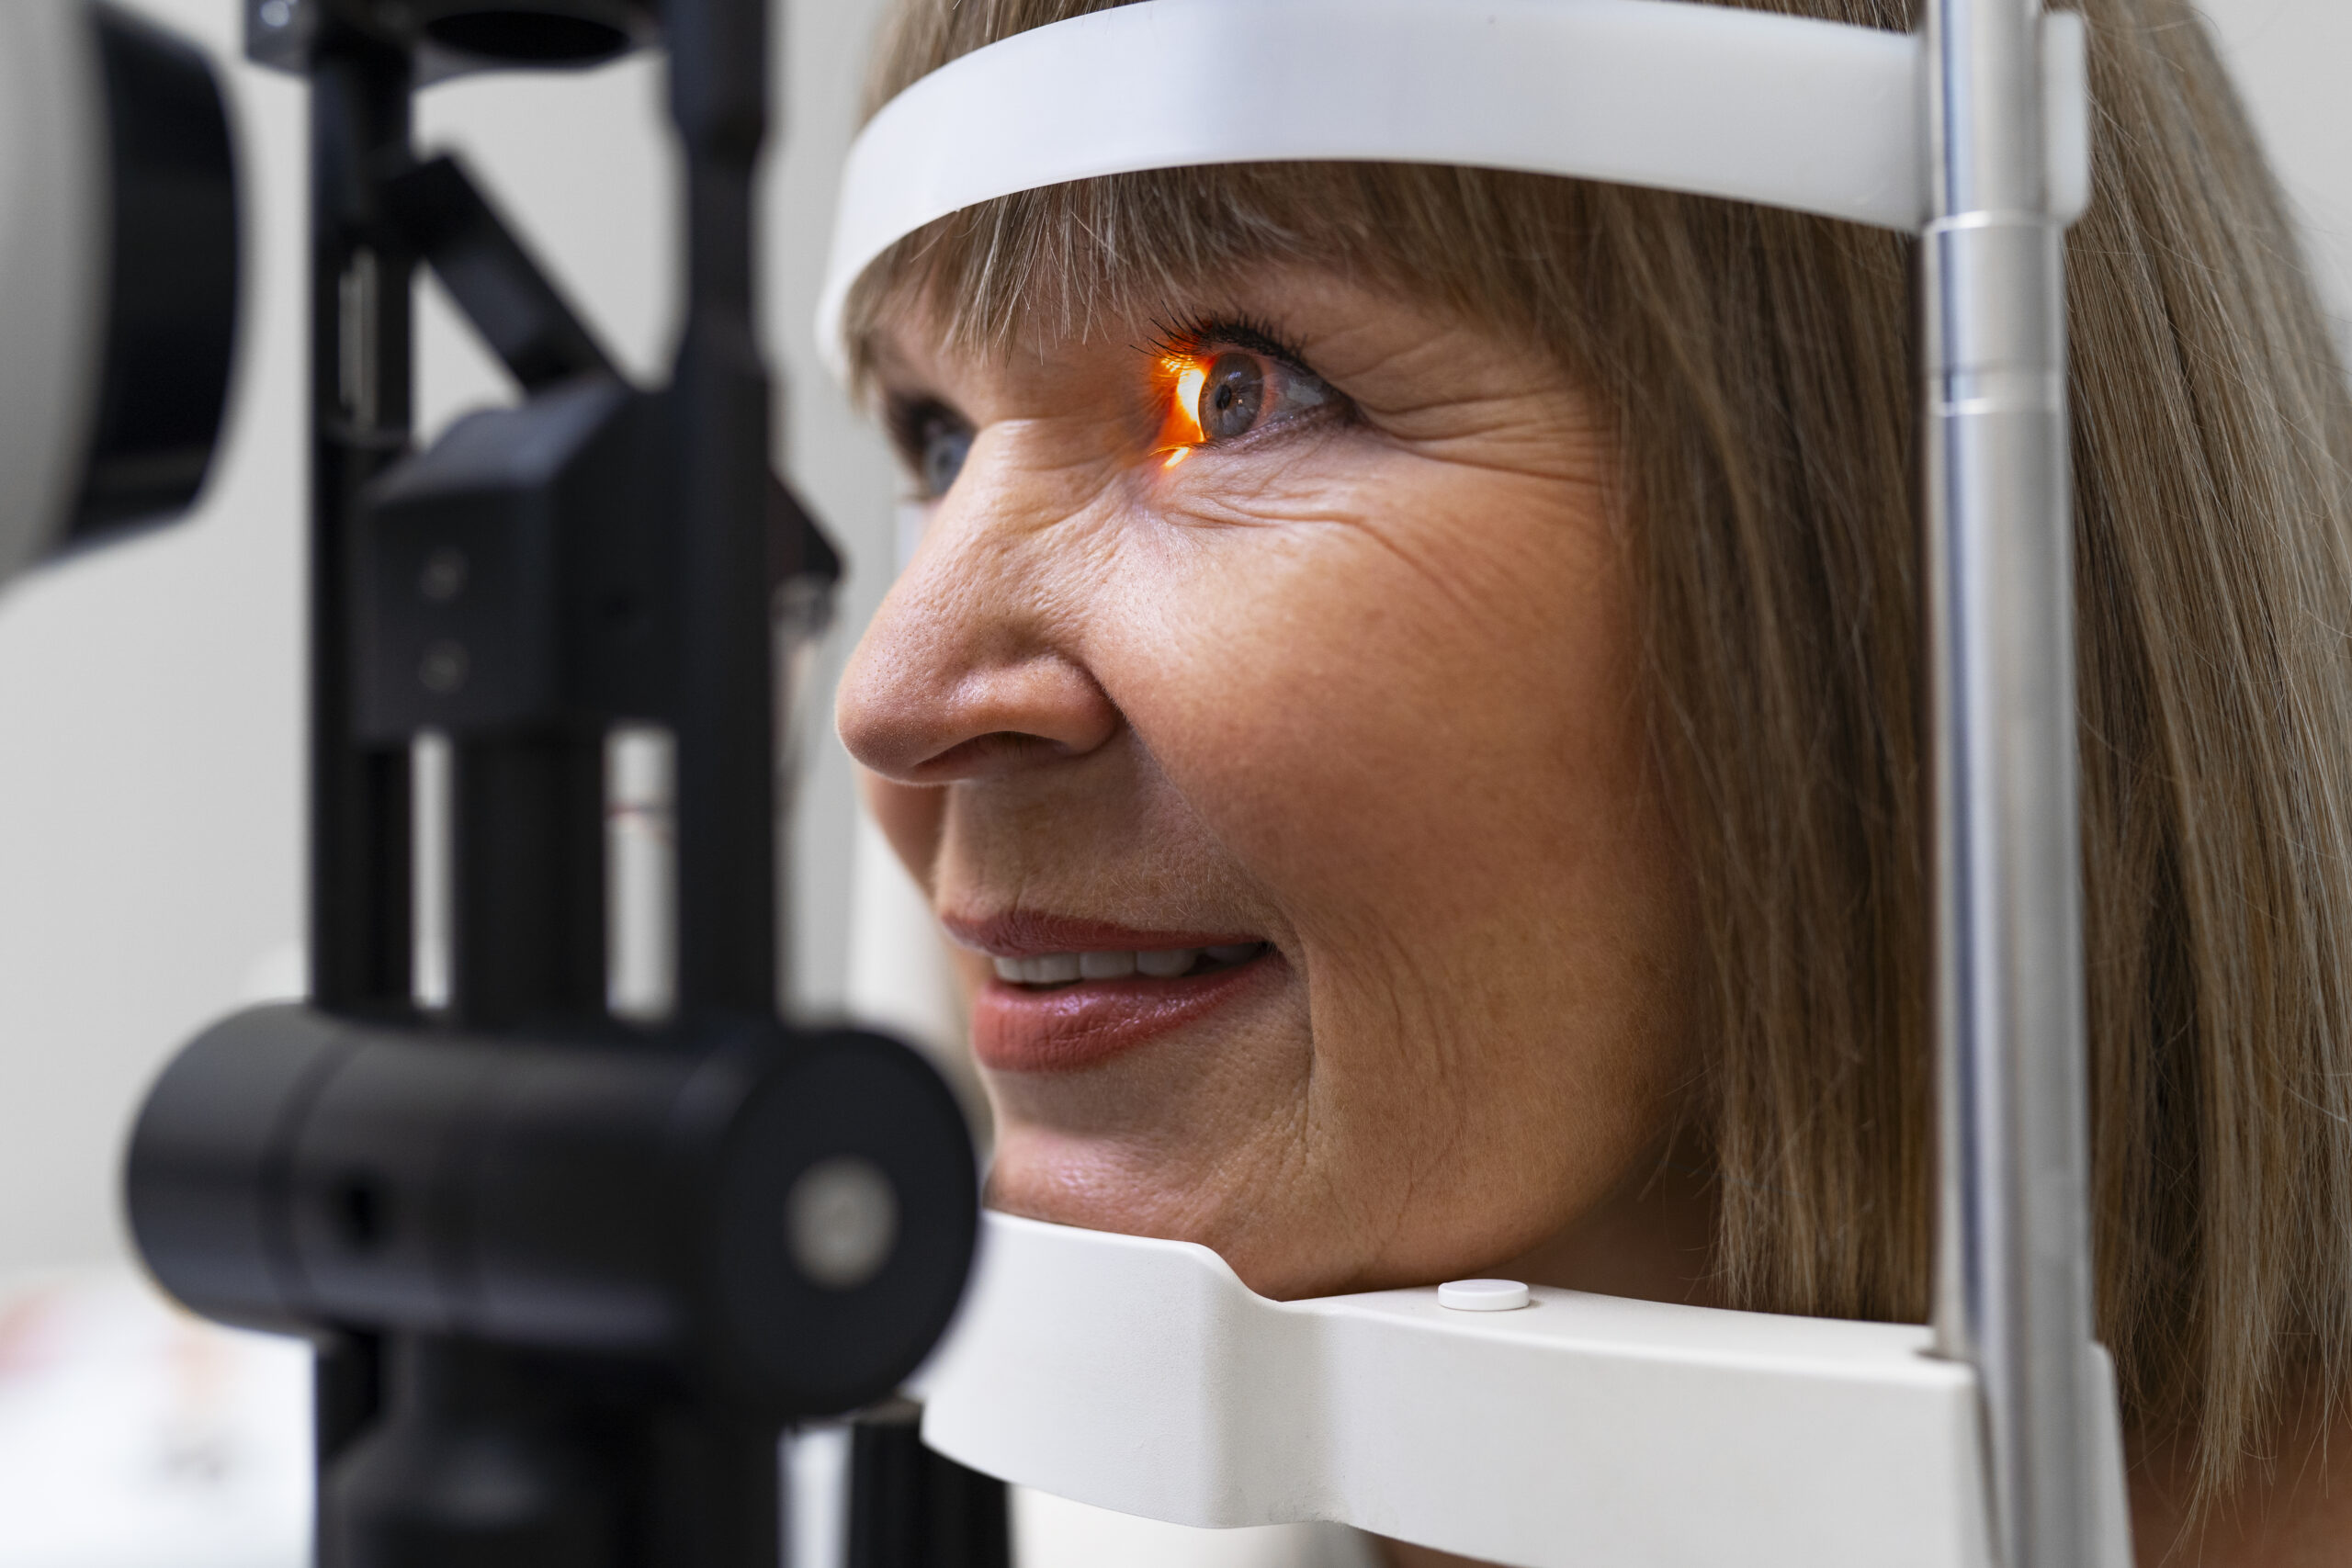 YAG Laser Eye Surgery in pune